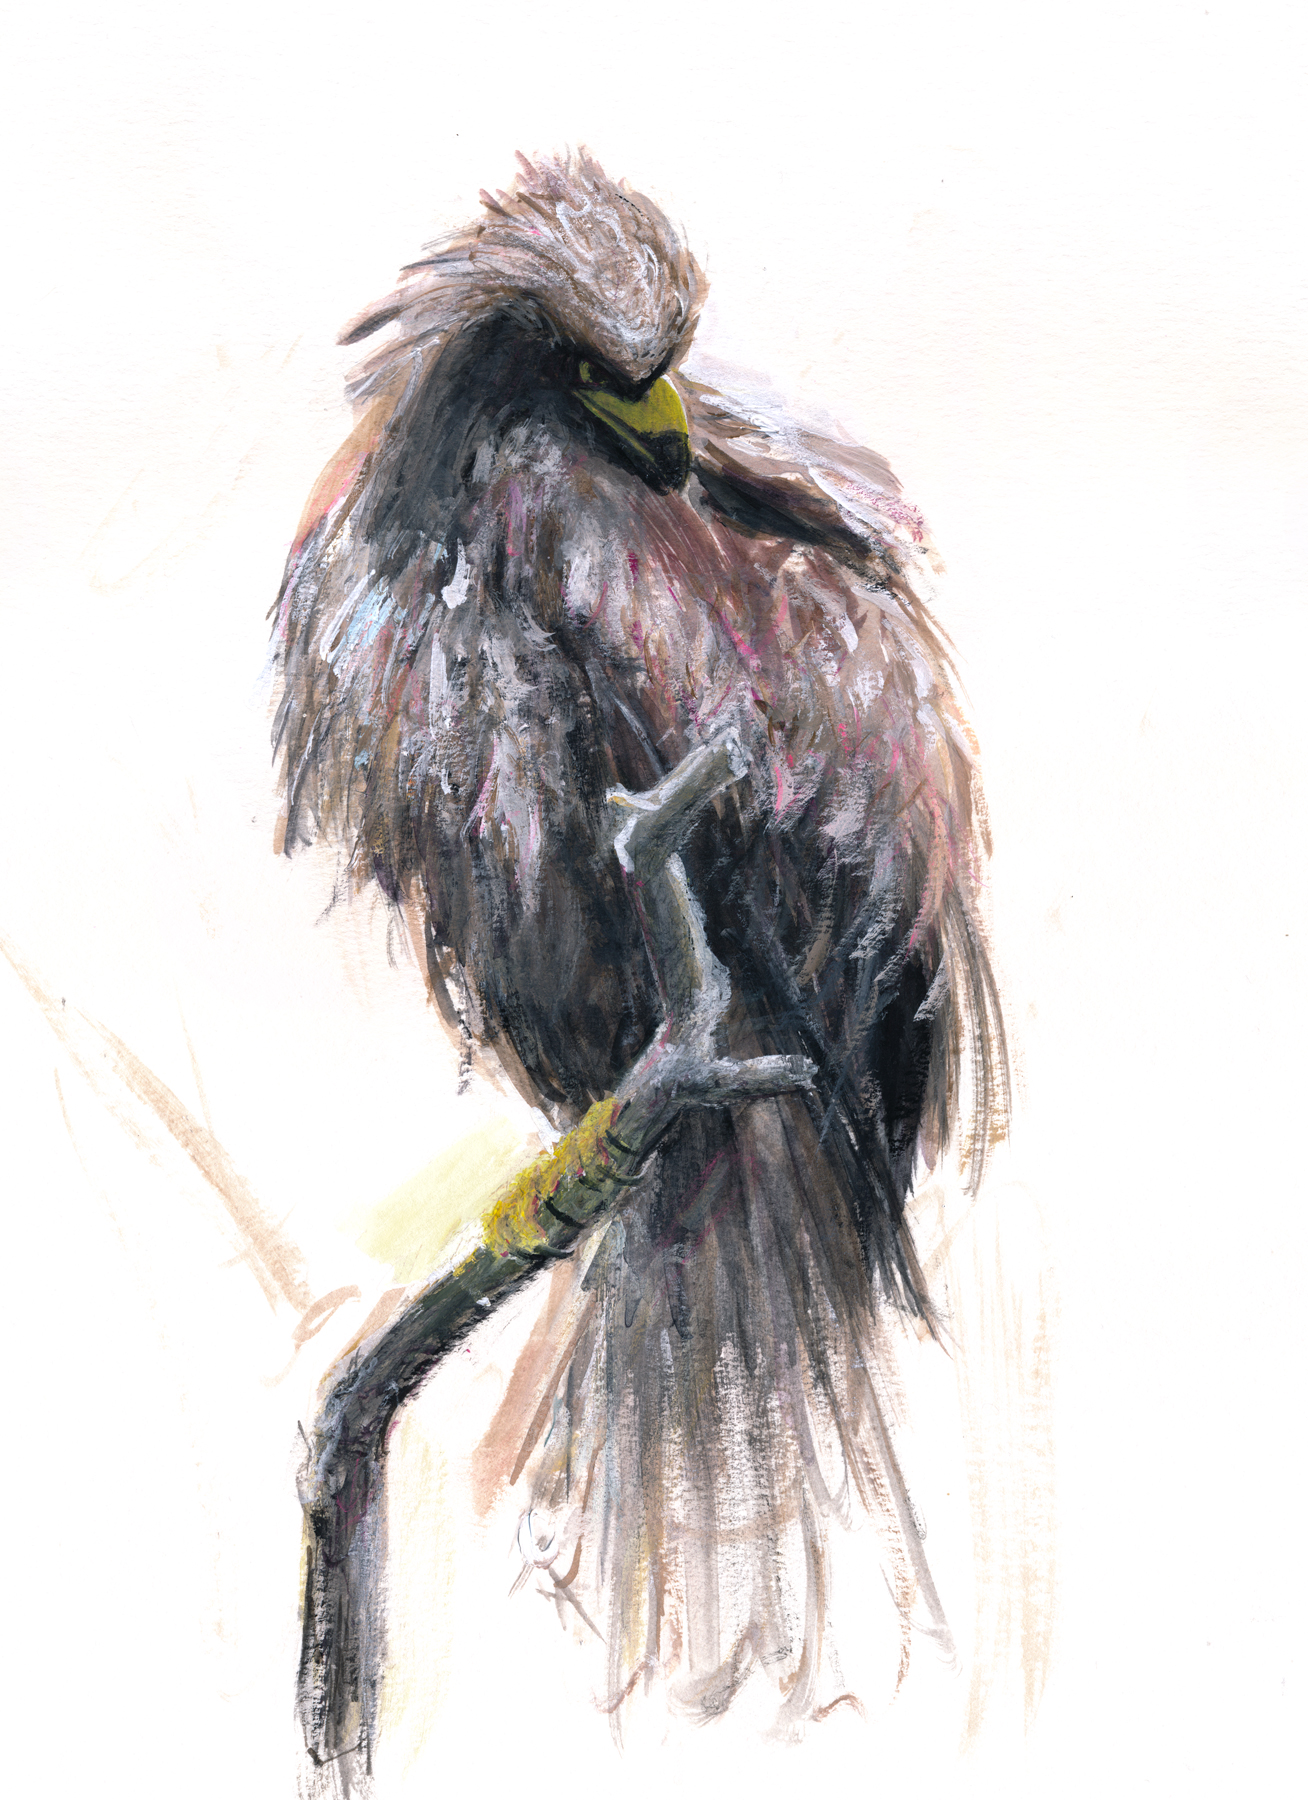 松木直紀 Naoki Matsuki 鷹 昨年上野動物園で撮った写真を元に描いてみました 鳥 って凄いフォトジェニックで どんなポーズをとっていてもかっこいいと思います 上野動物園 鳥 鷹 動物イラスト T Co 3ausy4g2is Twitter